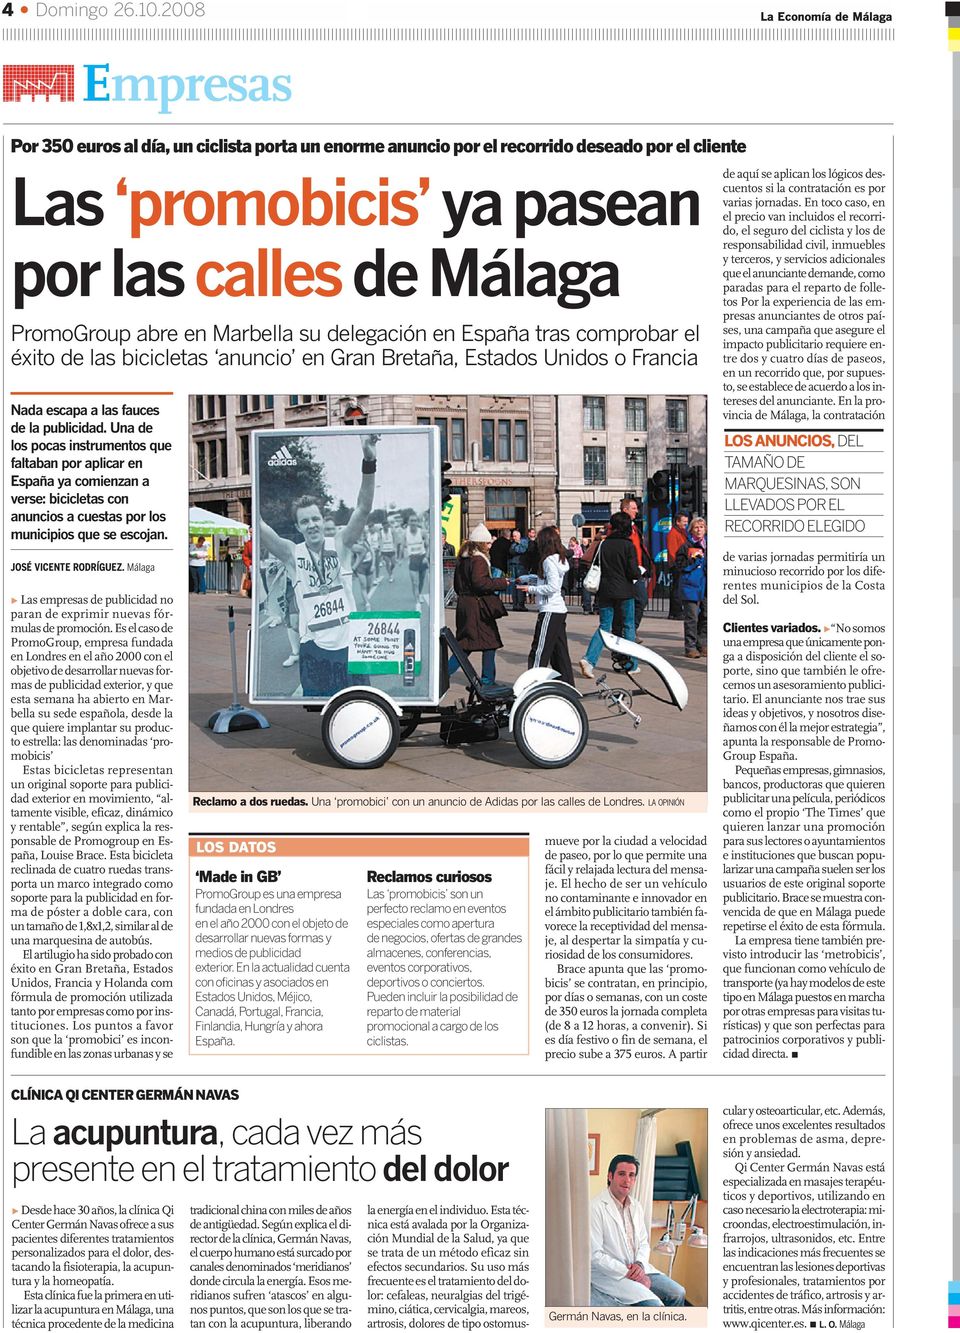 en Marbella su delegación en España tras comprobar el éxito de las bicicletas anuncio en Gran Bretaña, Estados Unidos o Francia Nada escapa a las fauces de la publicidad.